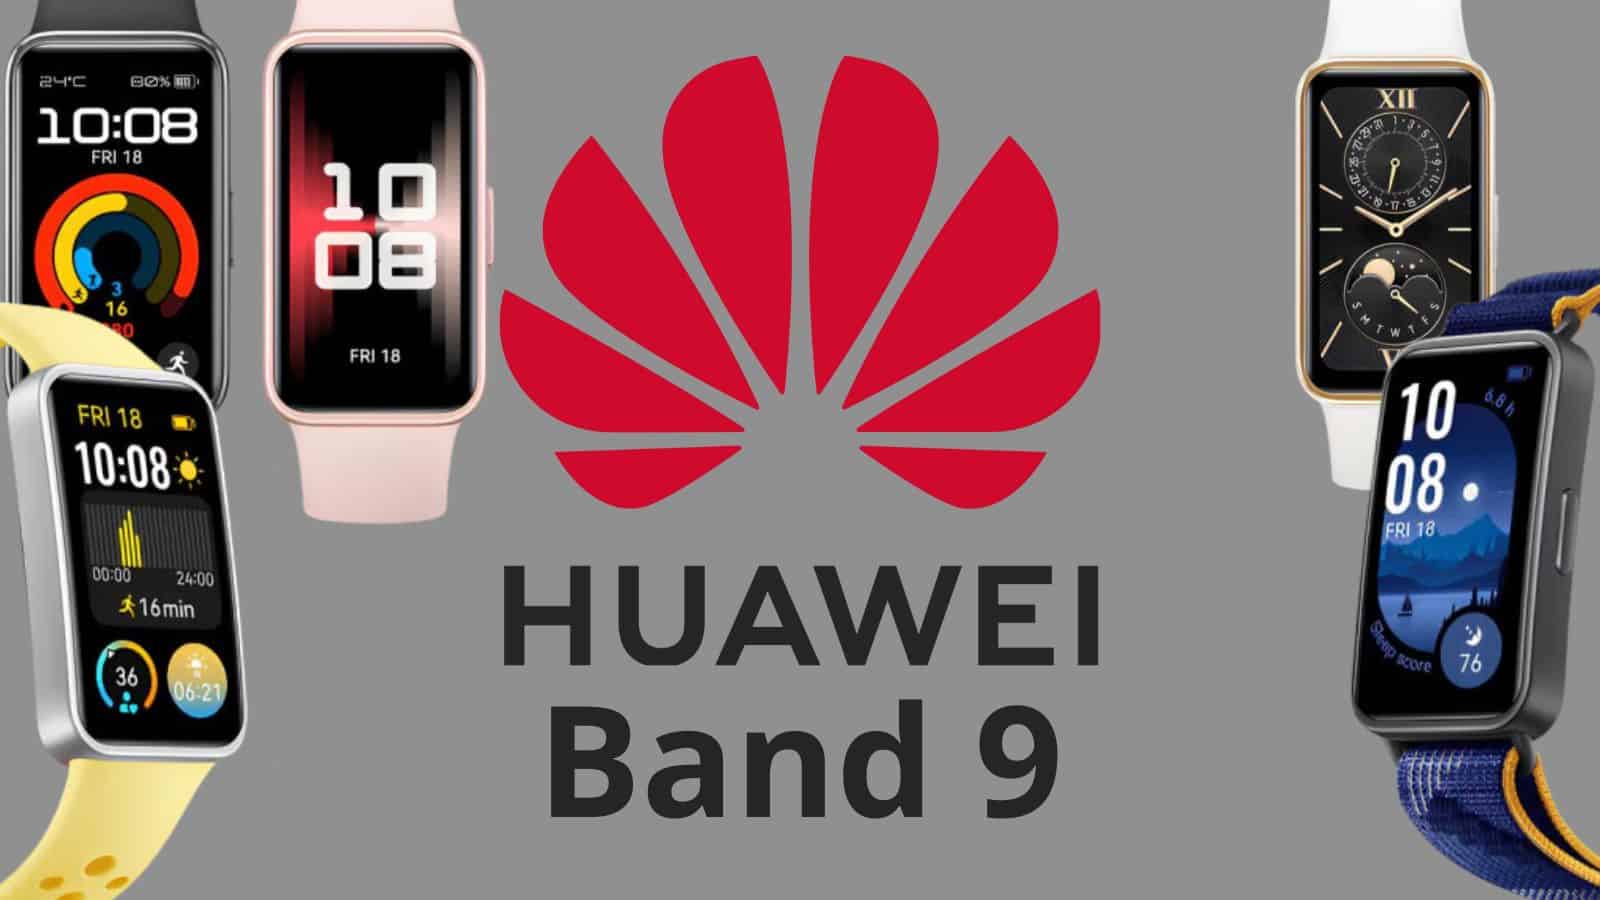 Huawei Band 9: rilasciate le specifiche e il prezzo europeo